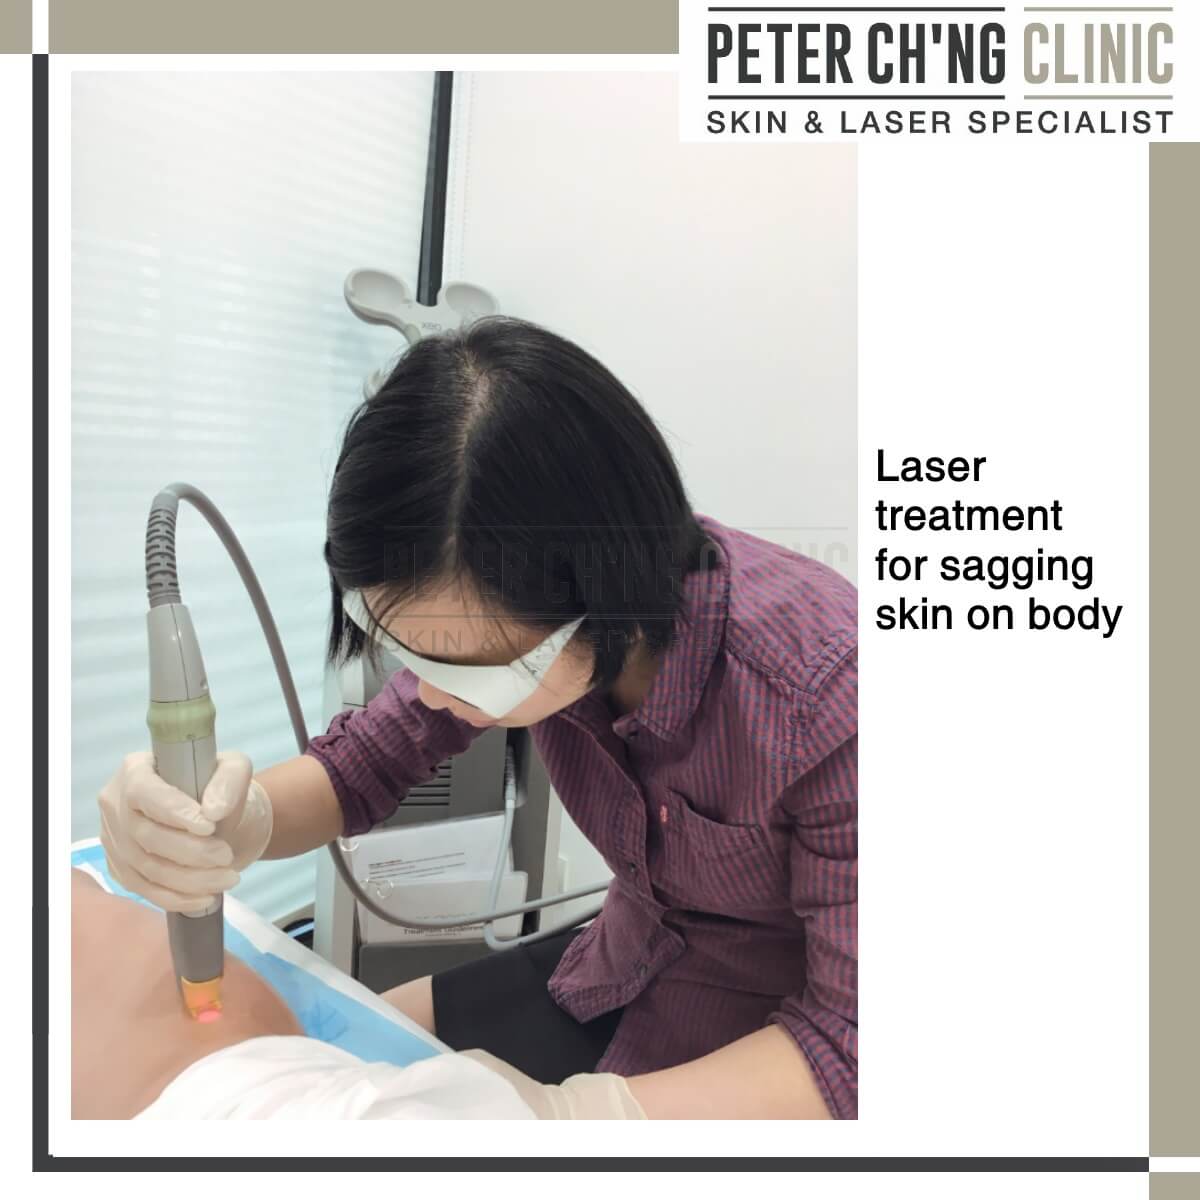 Laser treatment for sagging skin